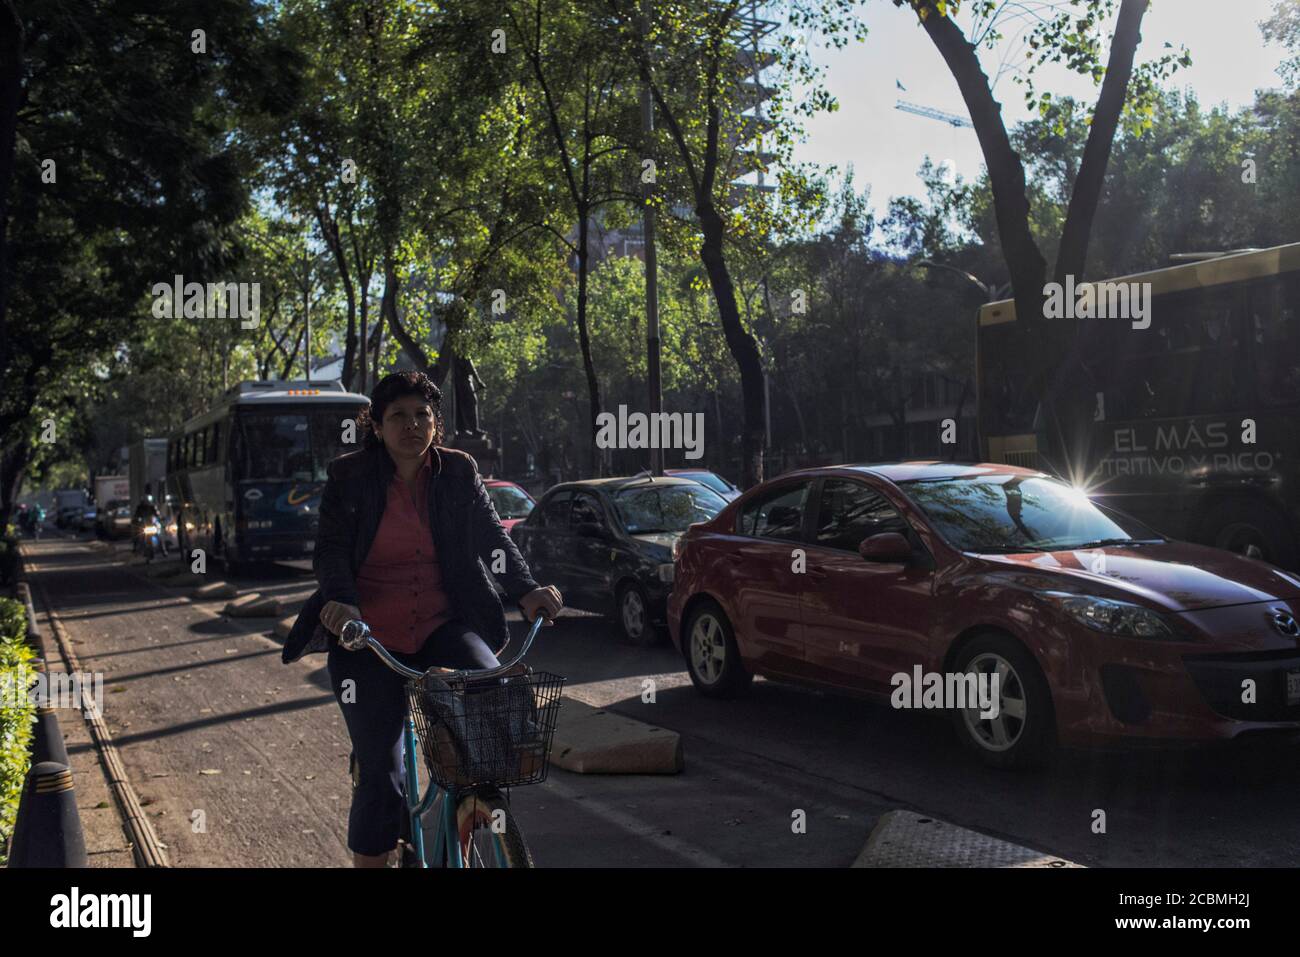 América del Norte - México, ciudad capital Ciudad de México: Una mujer que usa el carril bici a lo largo del Paseo de la Reforma durante su viaje por la mañana. Foto de stock